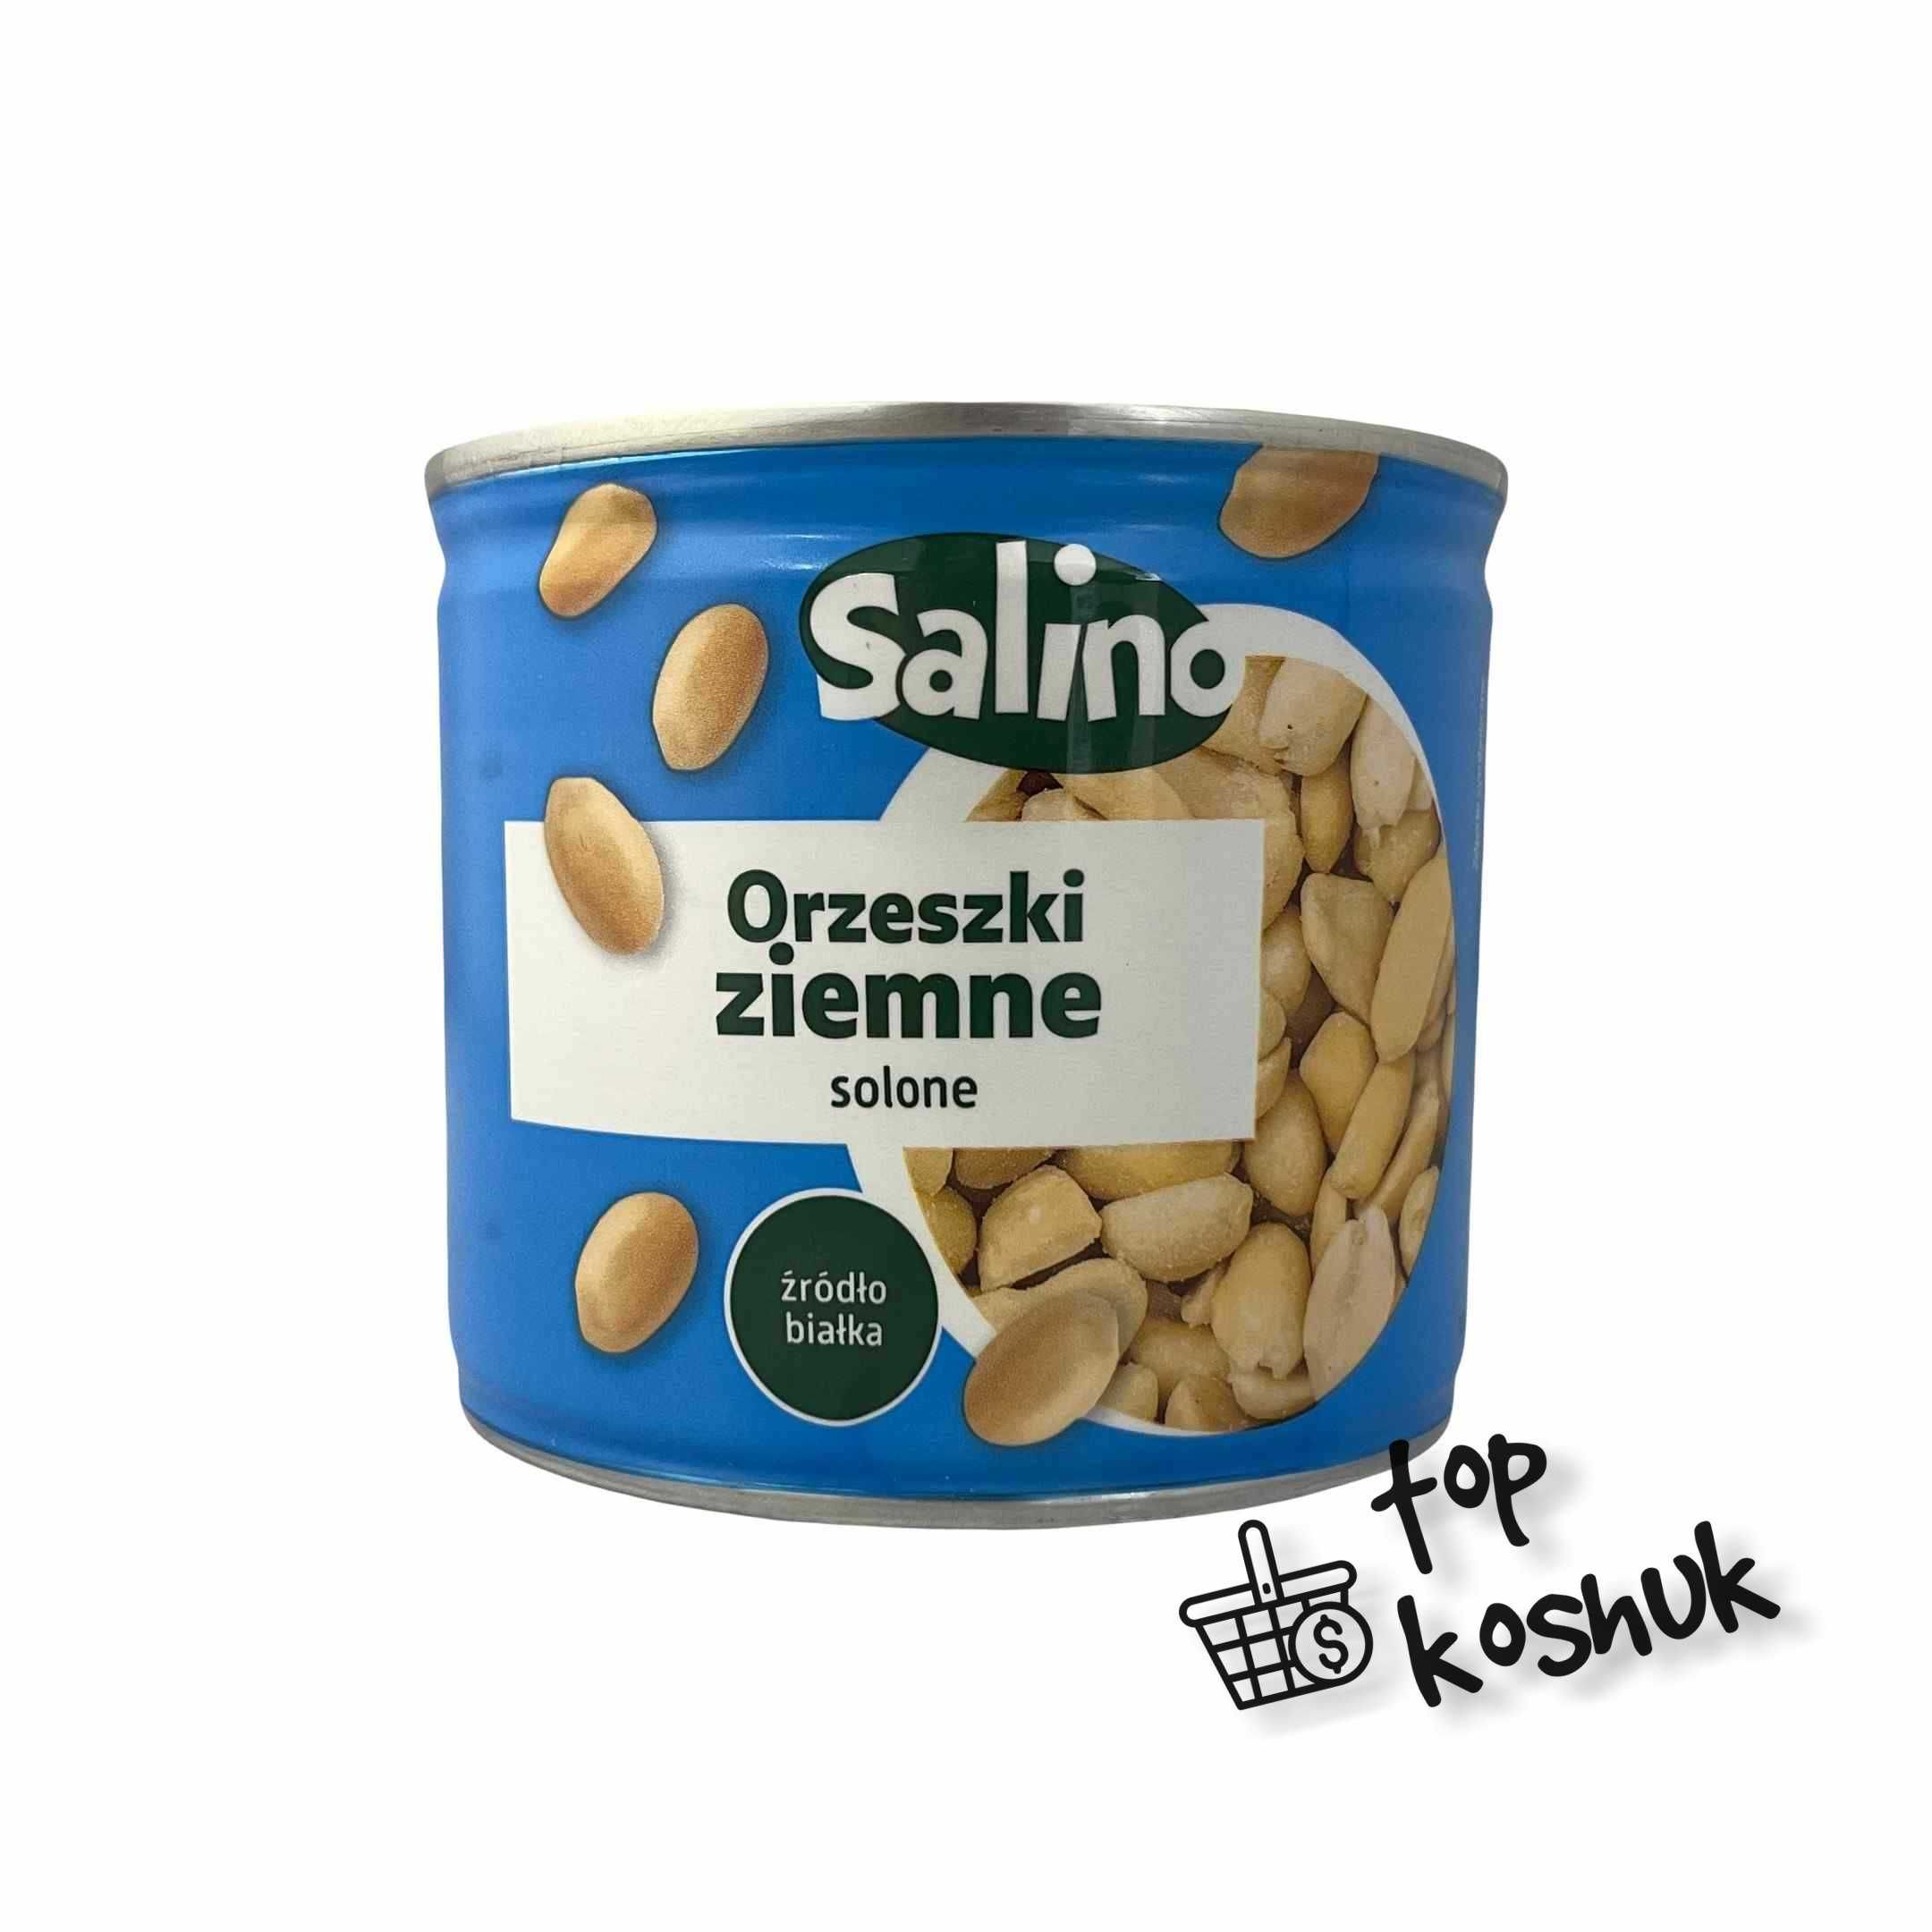 Горішки солоні Salino 150 г ж/б, TopKoshuk